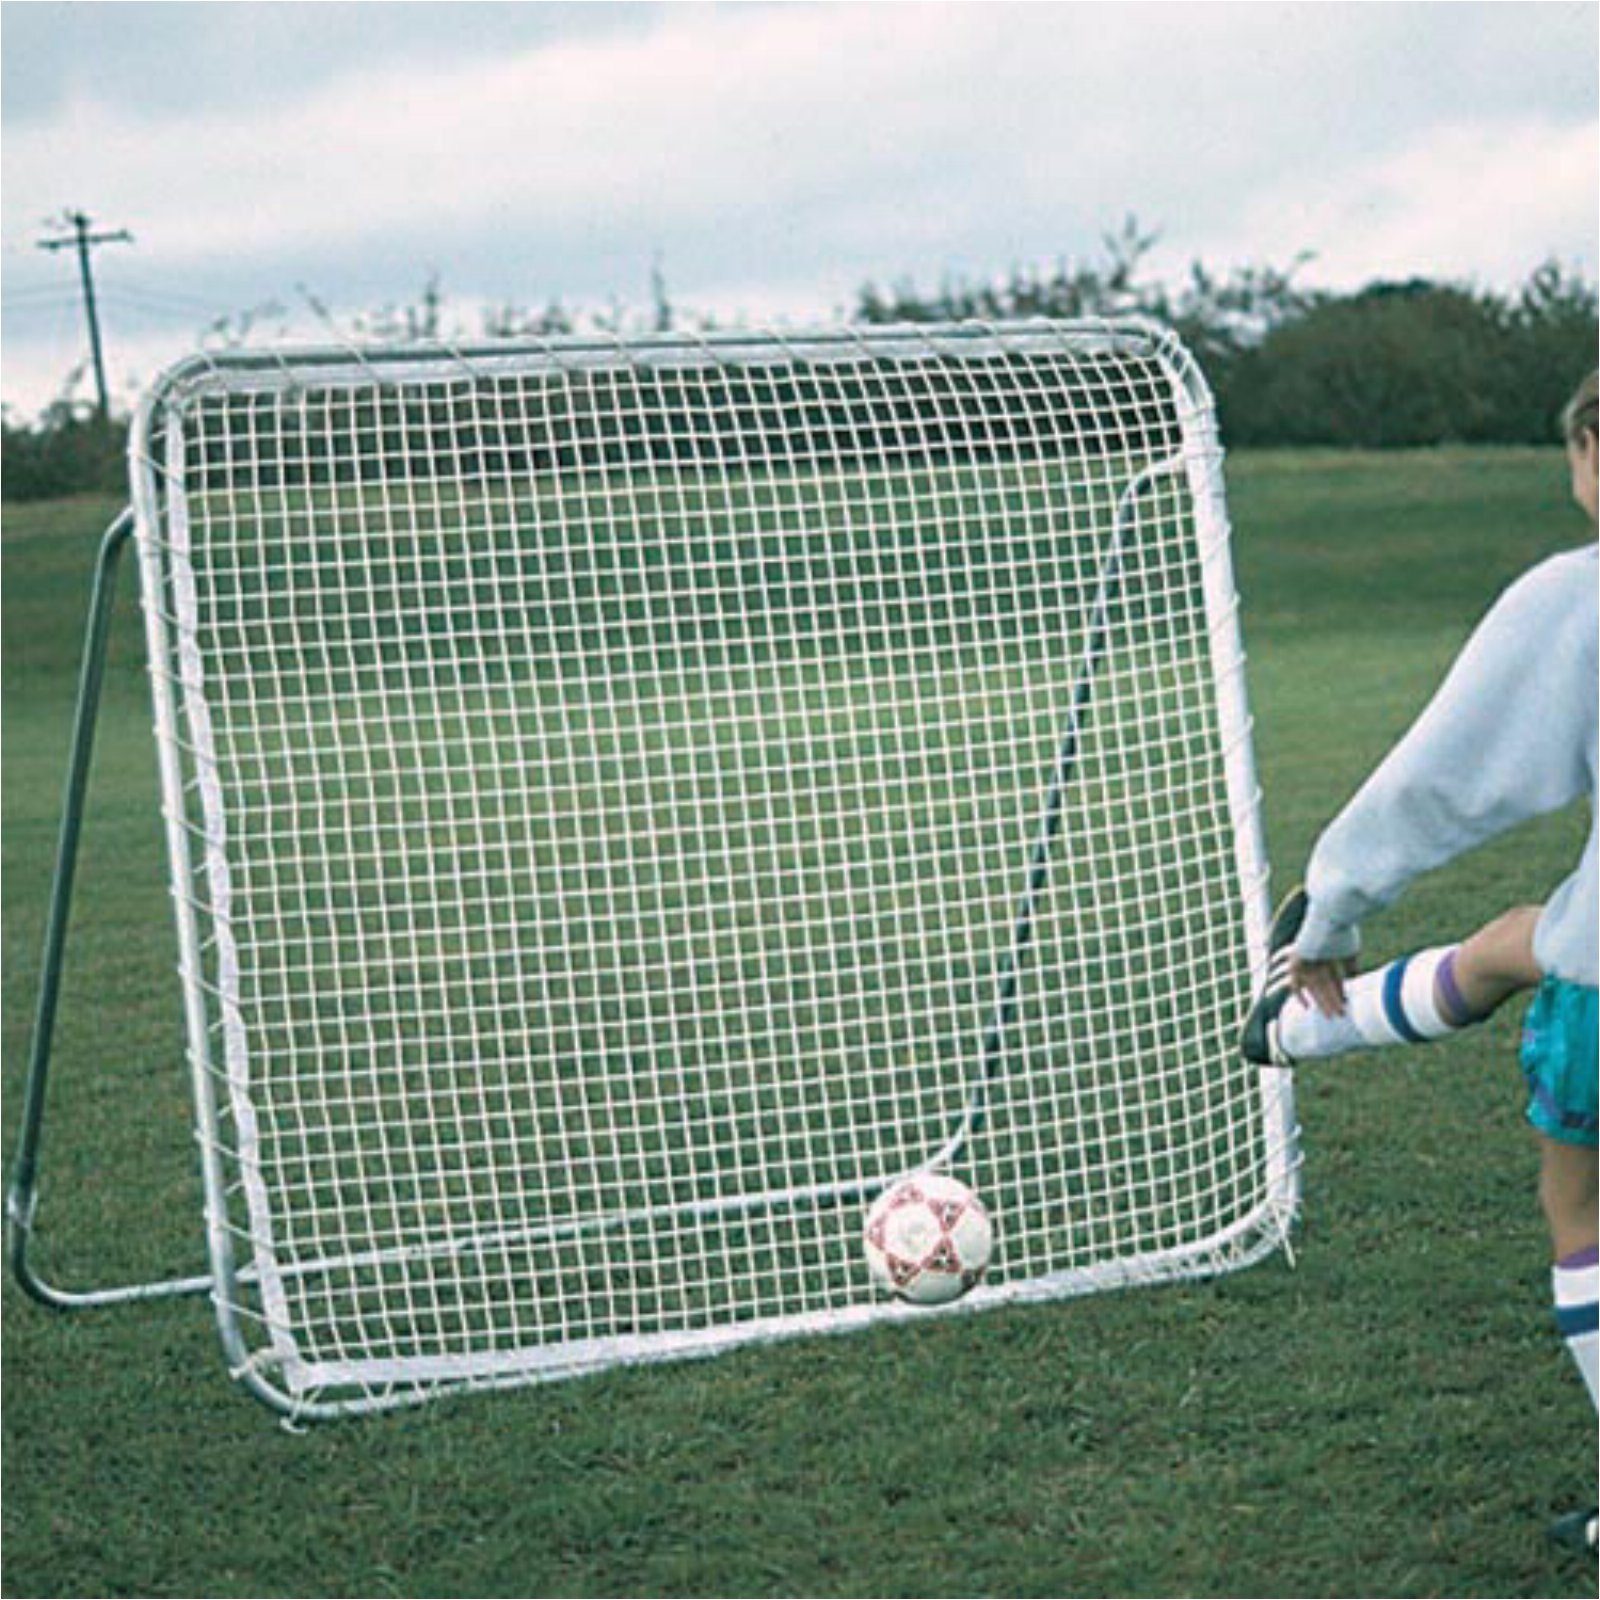 goal sporting goods train smart soccer rebounder skr1